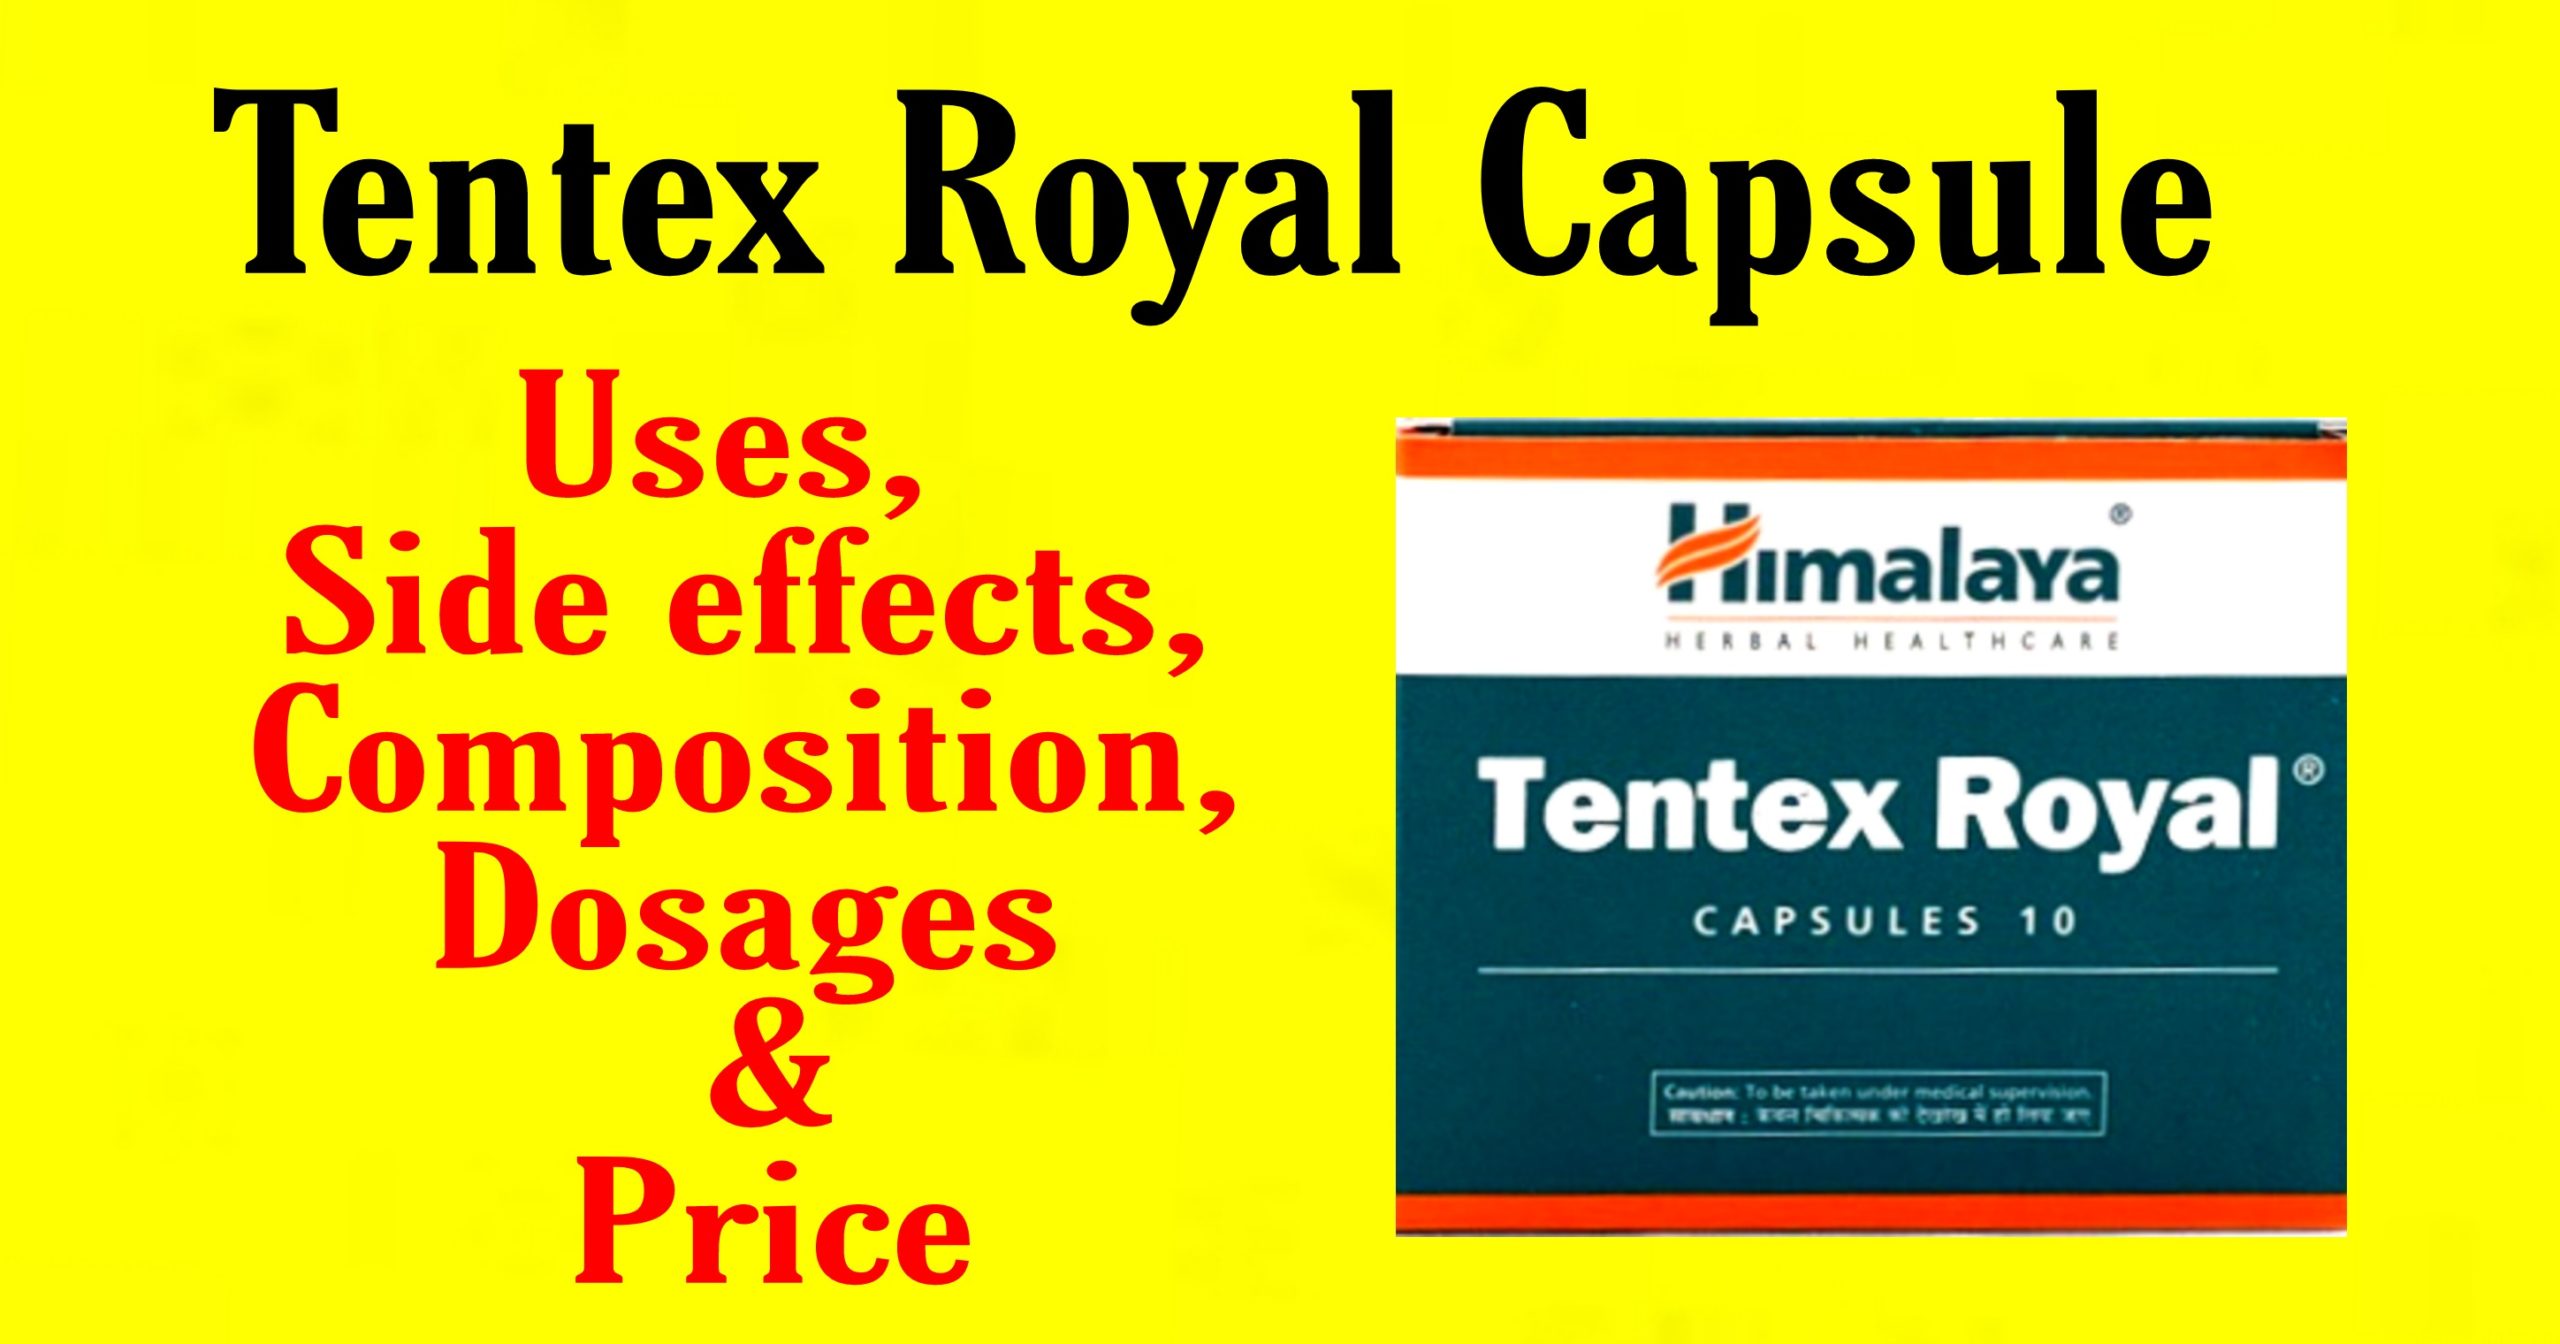 Tentex Royal Capsules: